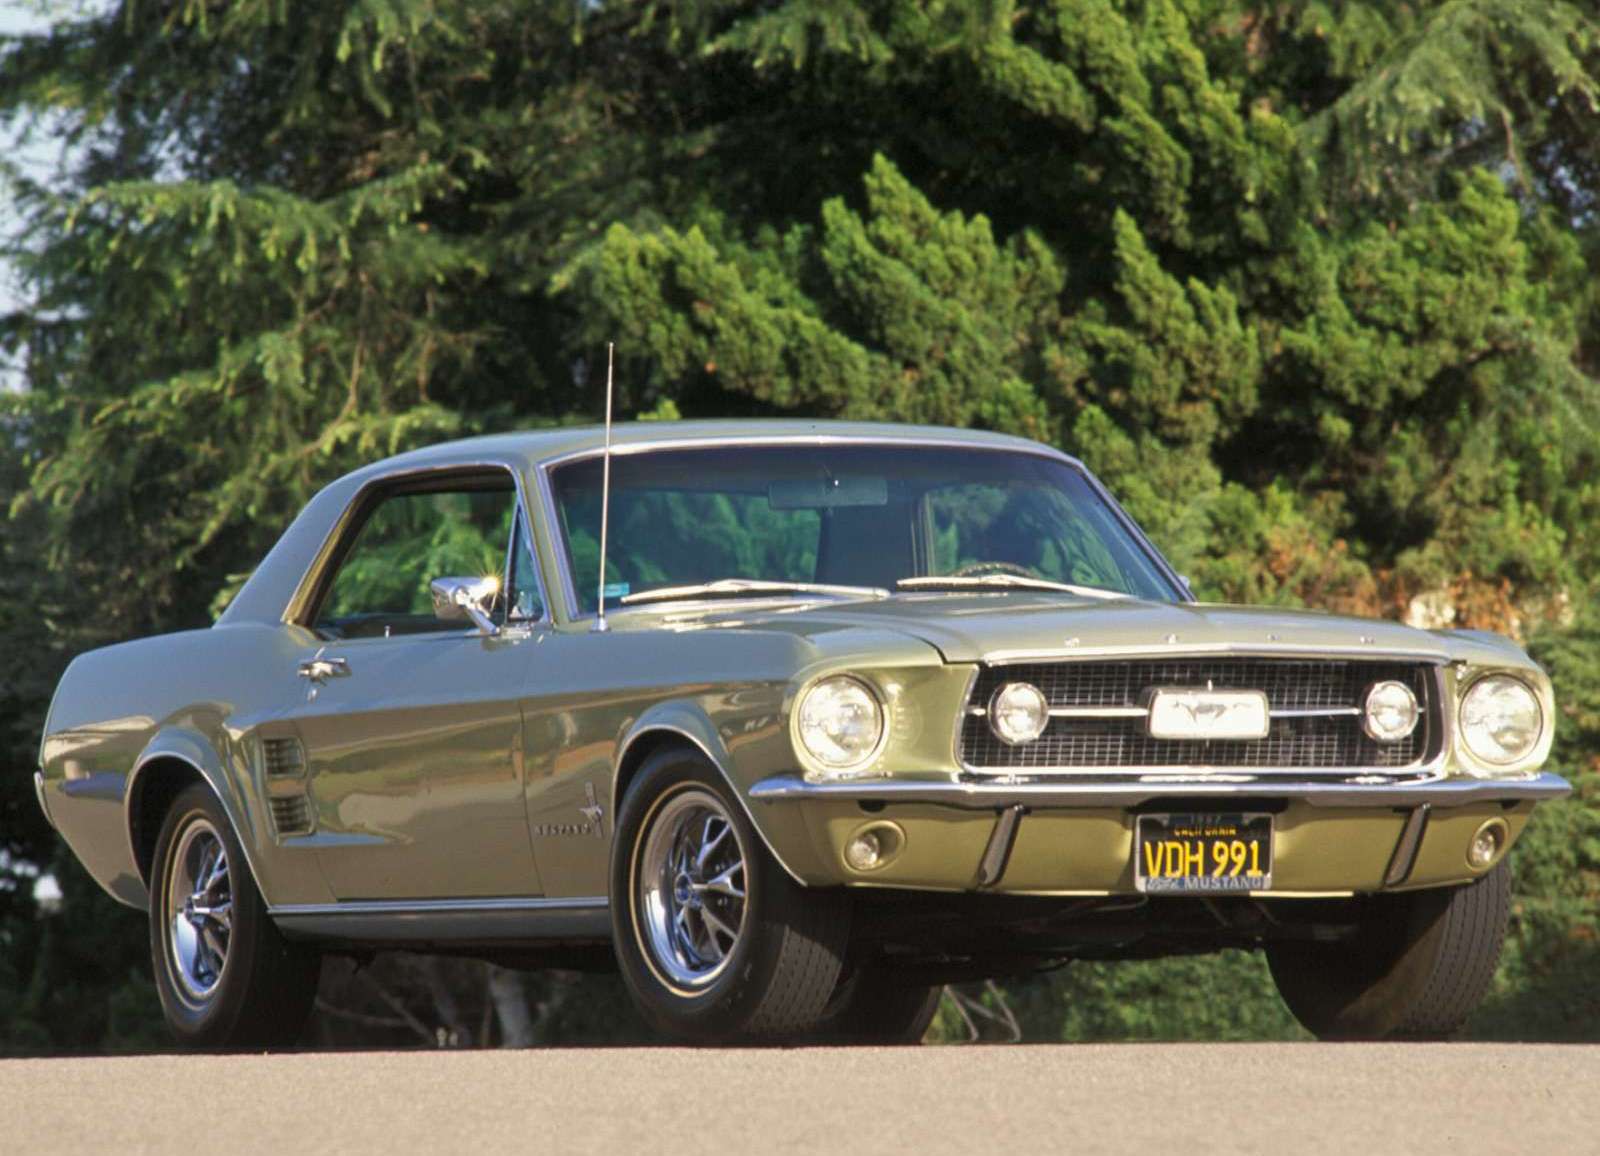 Coche antiguo Ford Mustang de 1967 ~ Fondos de coches